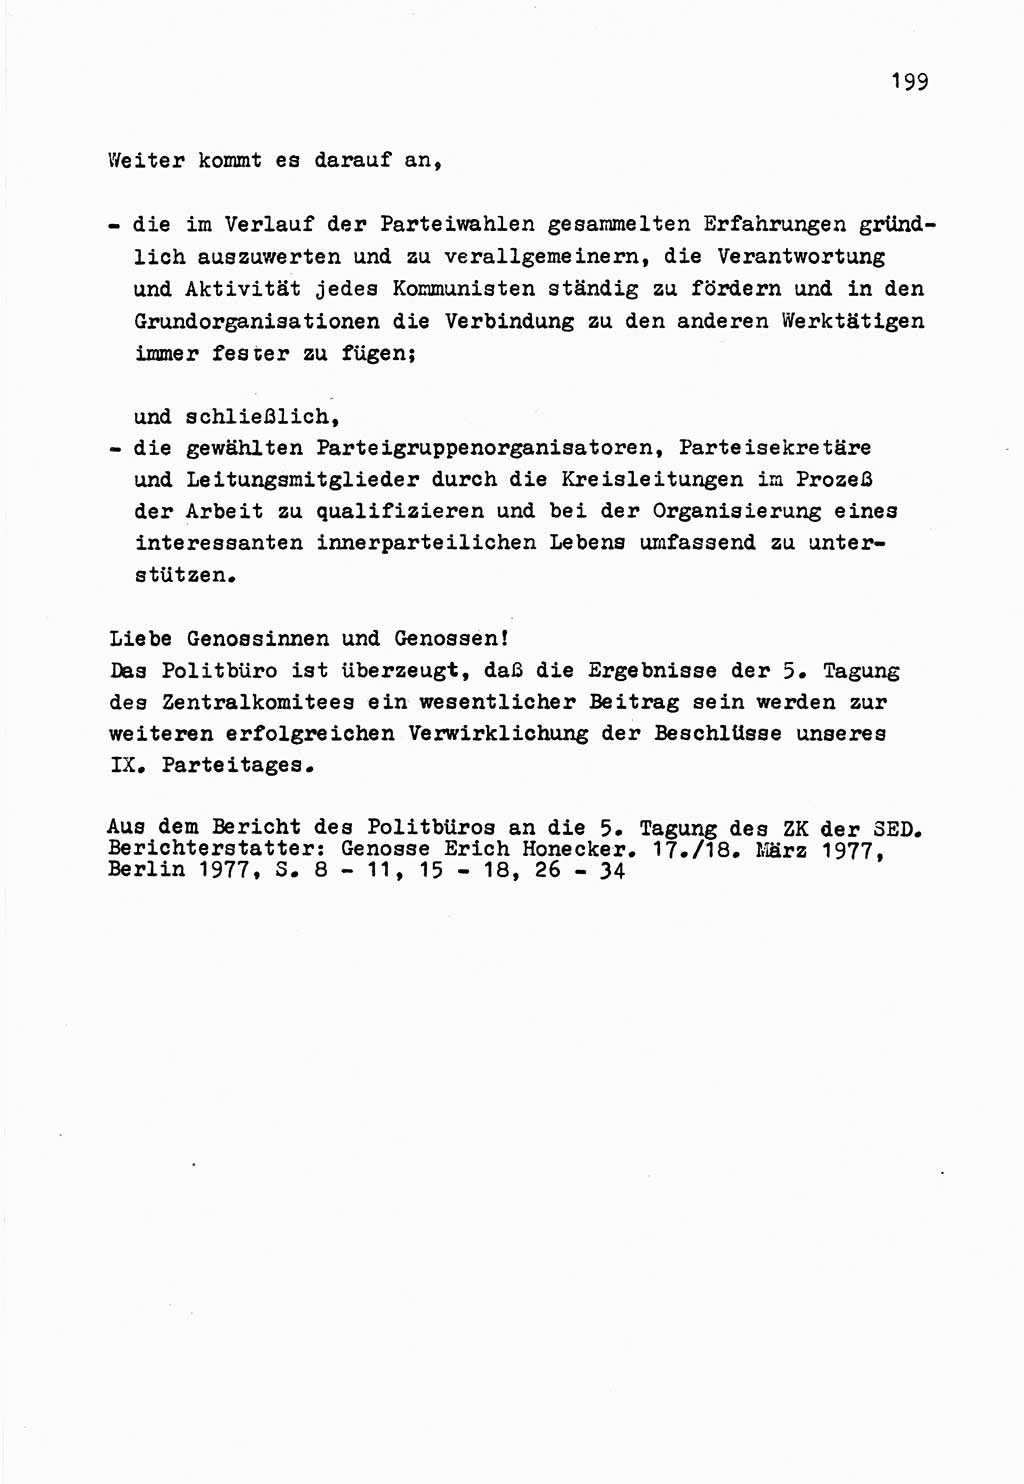 Zu Fragen der Parteiarbeit [Sozialistische Einheitspartei Deutschlands (SED) Deutsche Demokratische Republik (DDR)] 1979, Seite 199 (Fr. PA SED DDR 1979, S. 199)